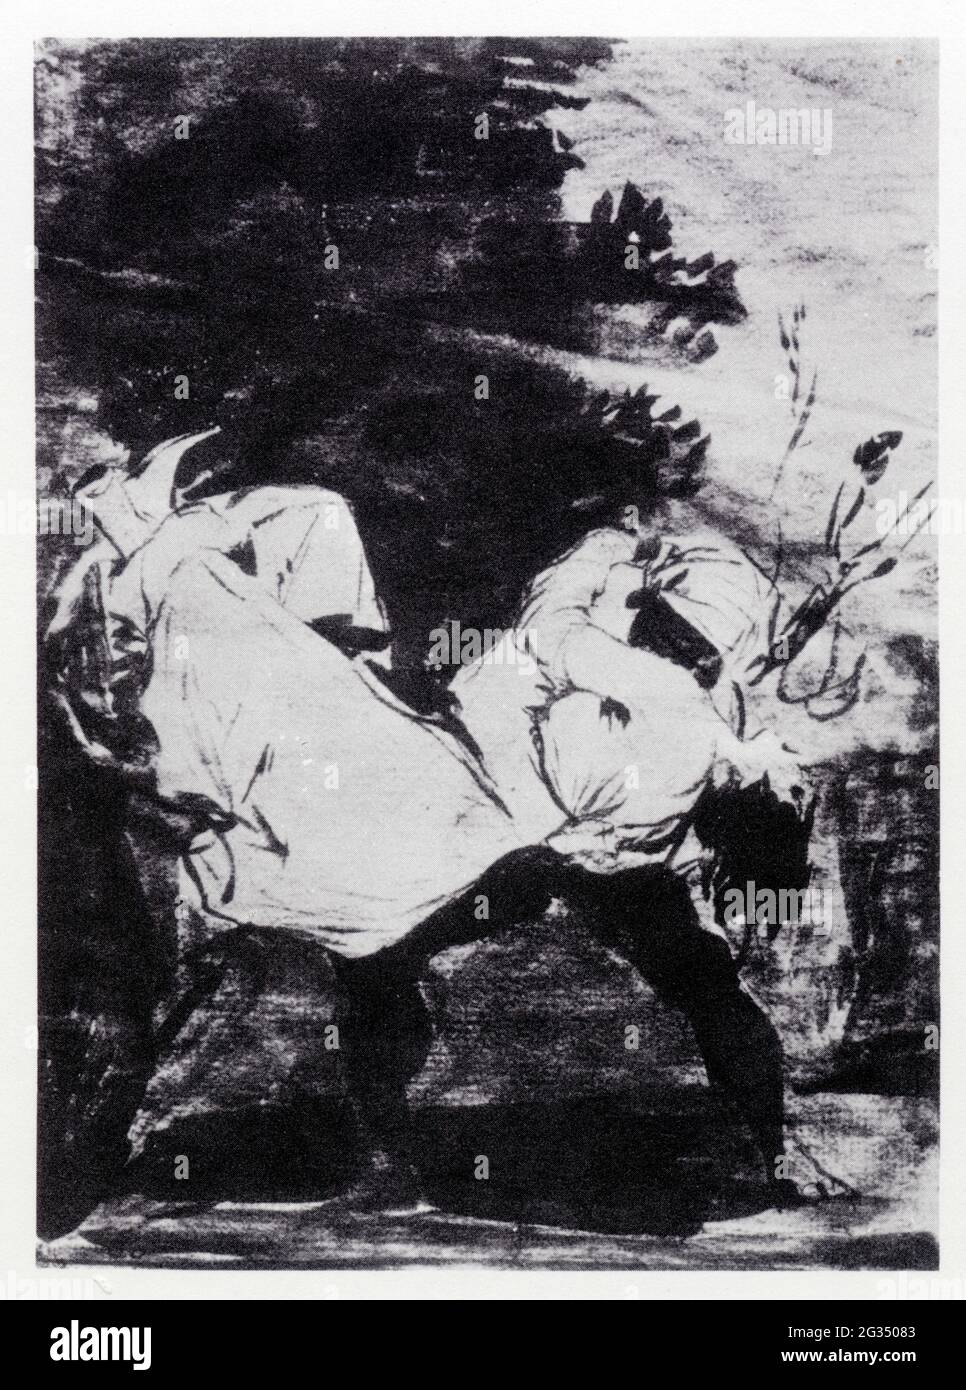 Francisco Goya. Que se la llevaron! Deux hommes emportant une femme. 1797-1798. Pinceau e lavis rouge Foto Stock